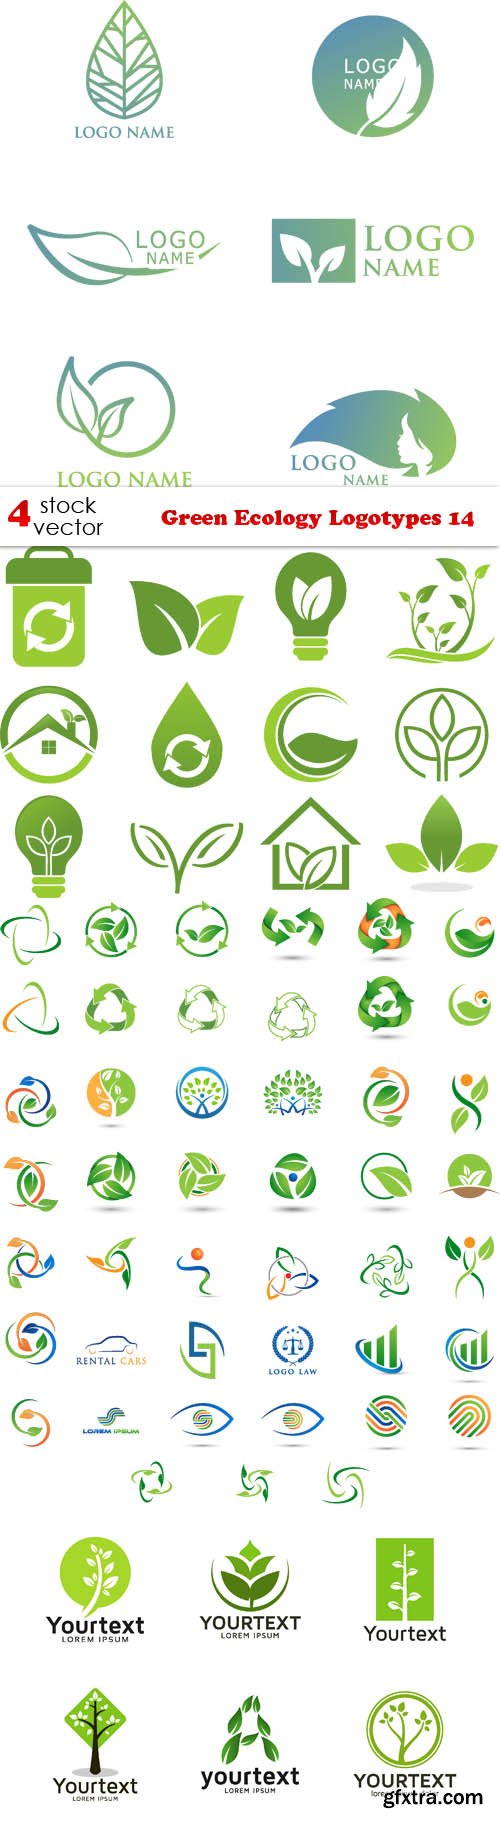 Vectors - Green Ecology Logotypes 14